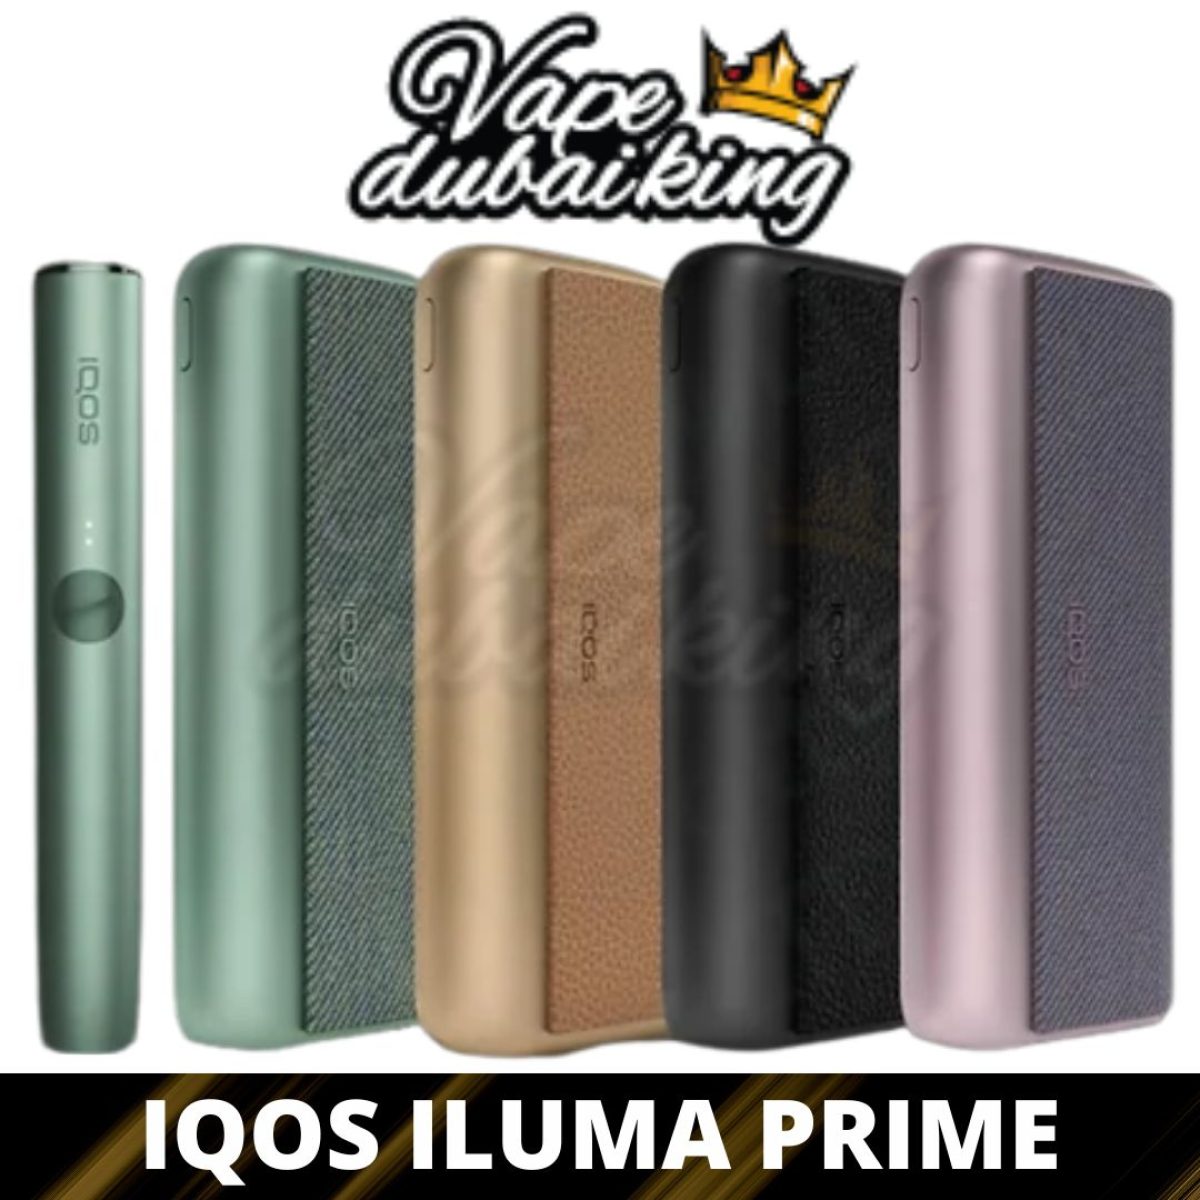 IQOS Iluma Prime, In stock